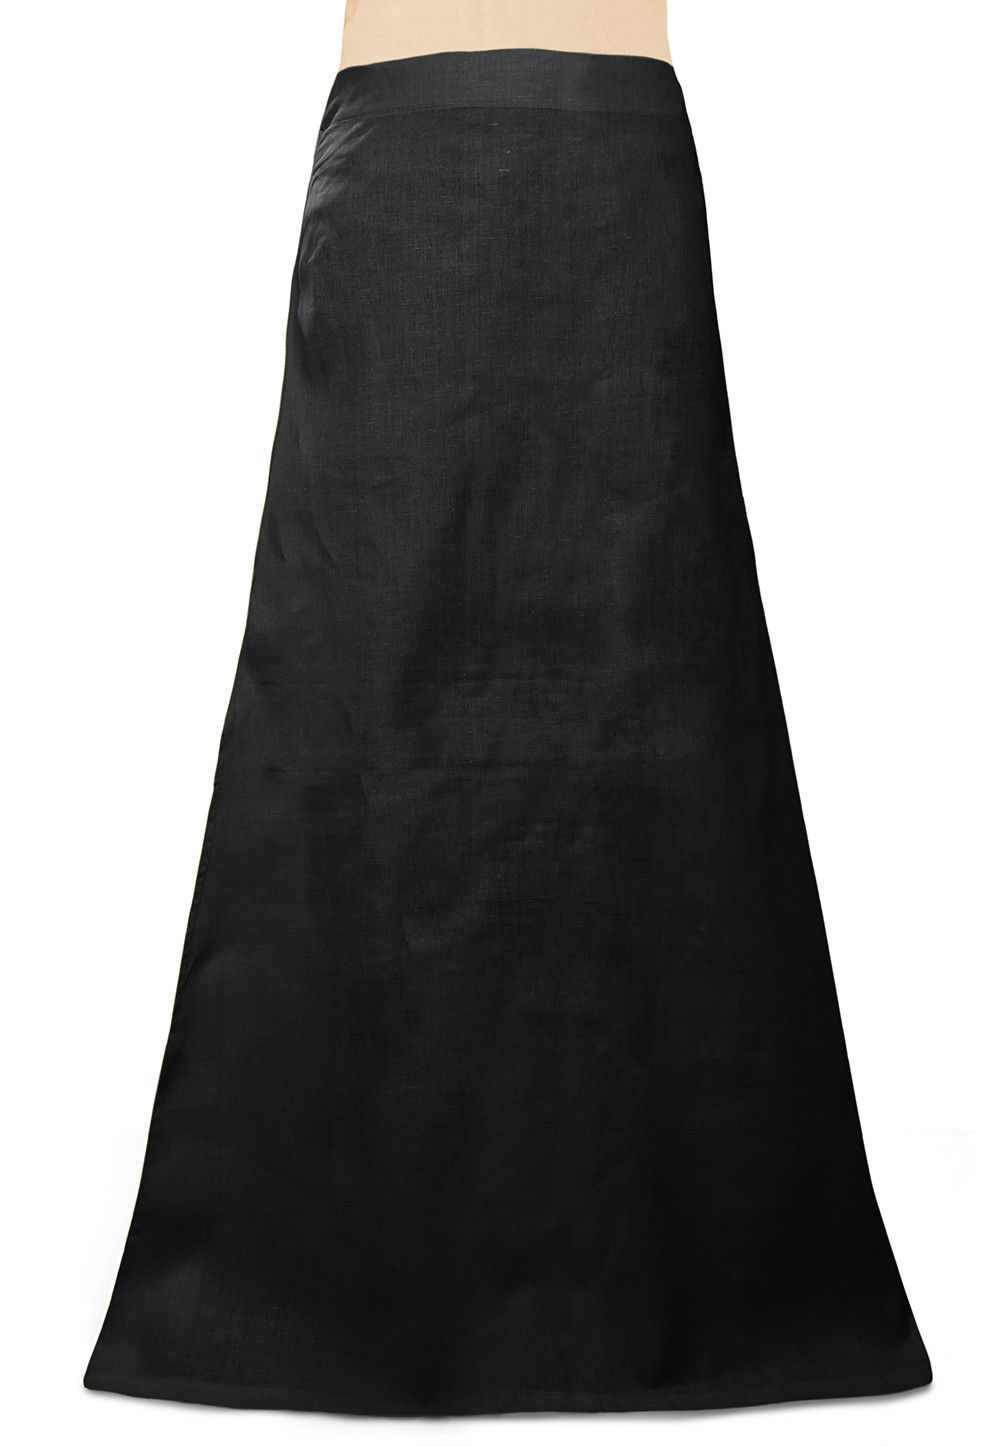 Buy Cotton Petticoat in Black Online : UUB84 - Utsav Fashion